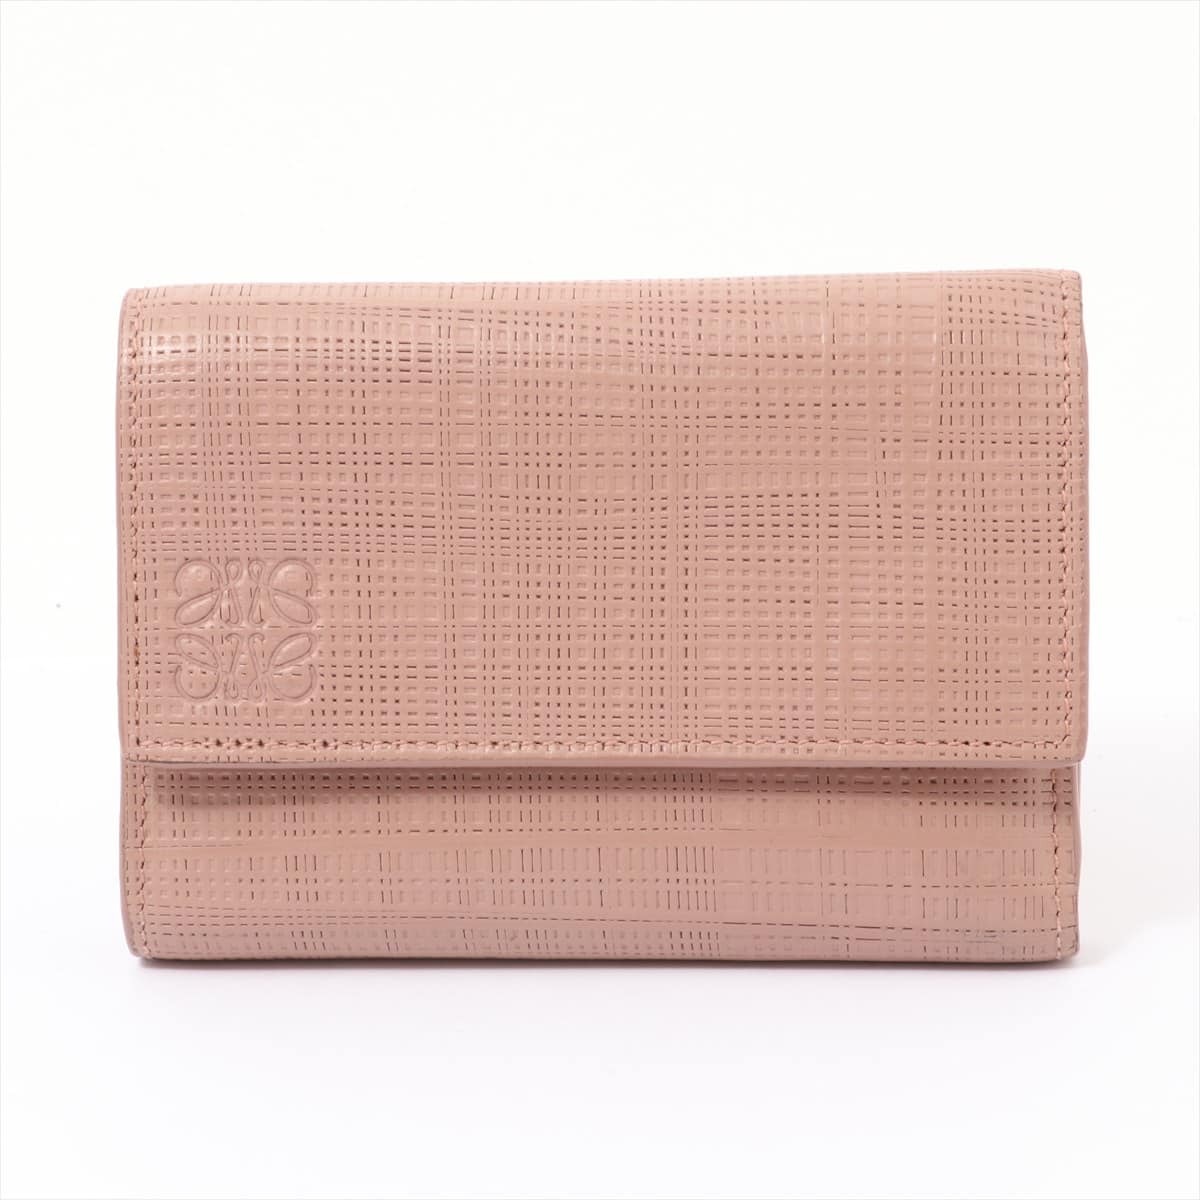 Loewe Leather Wallet Pink beige